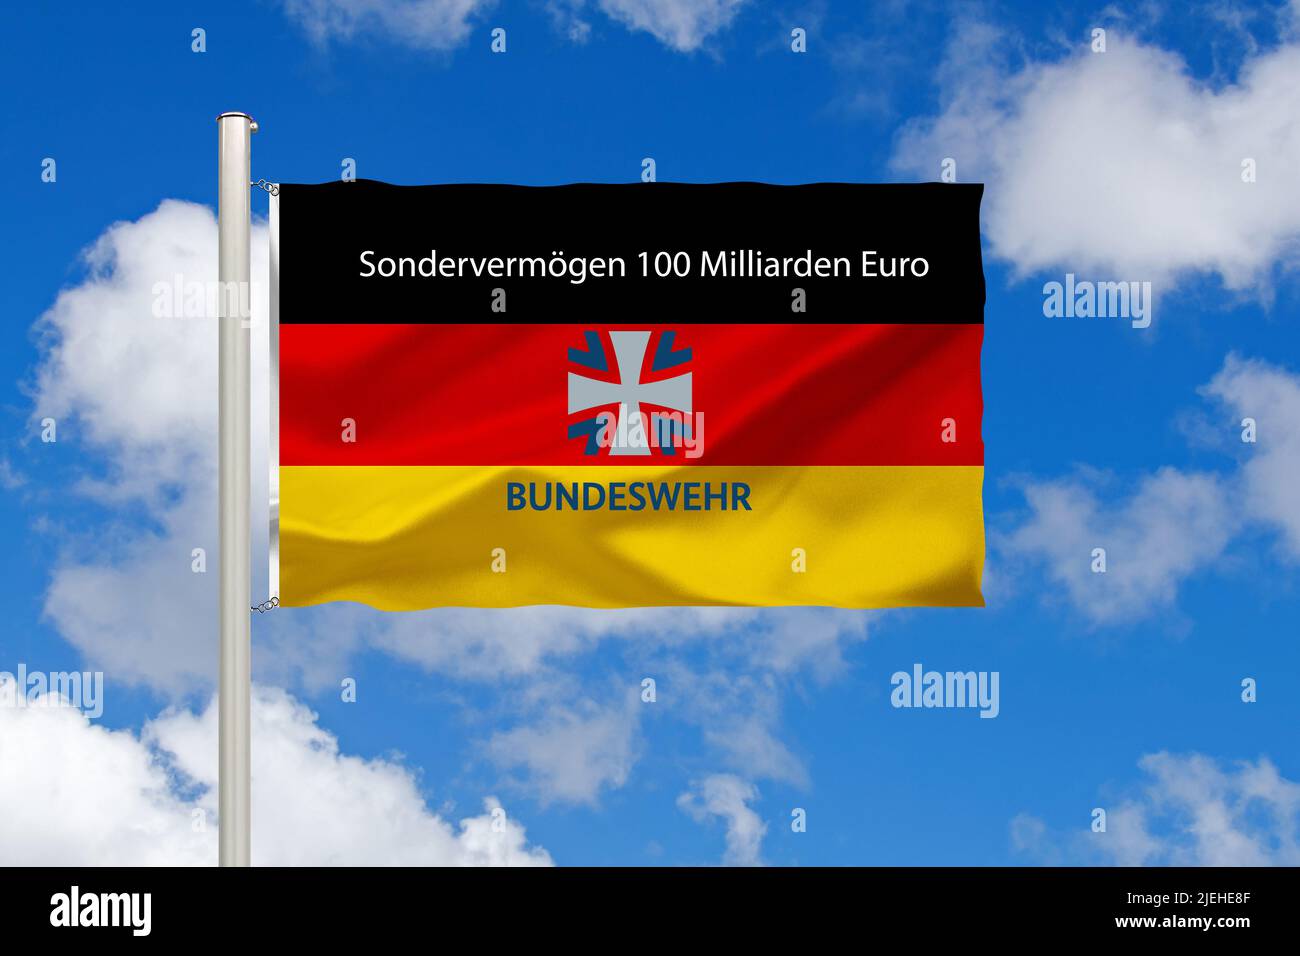 https://c8.alamy.com/compes/2jehe8f/europa-eu-bundesrepublik-deutschland-flagge-nationalflagge-fahne-nationalfahne-cumulus-wolken-vor-blauen-himmel-sondervermogen-fur-die-bundesw-2jehe8f.jpg